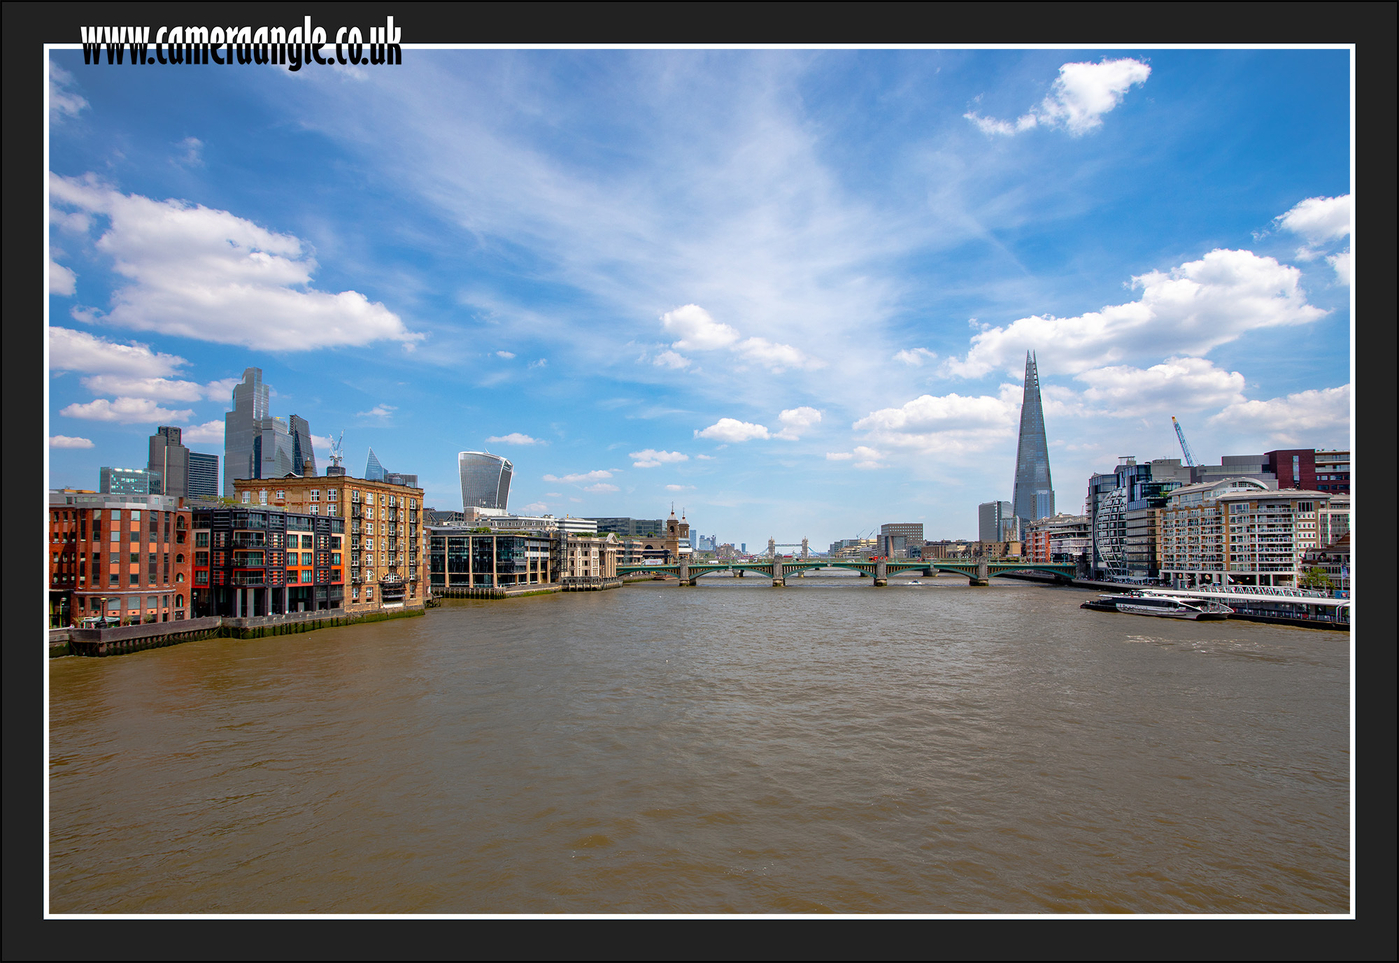 London_River_Thames_View
Keywords: London River Thames View